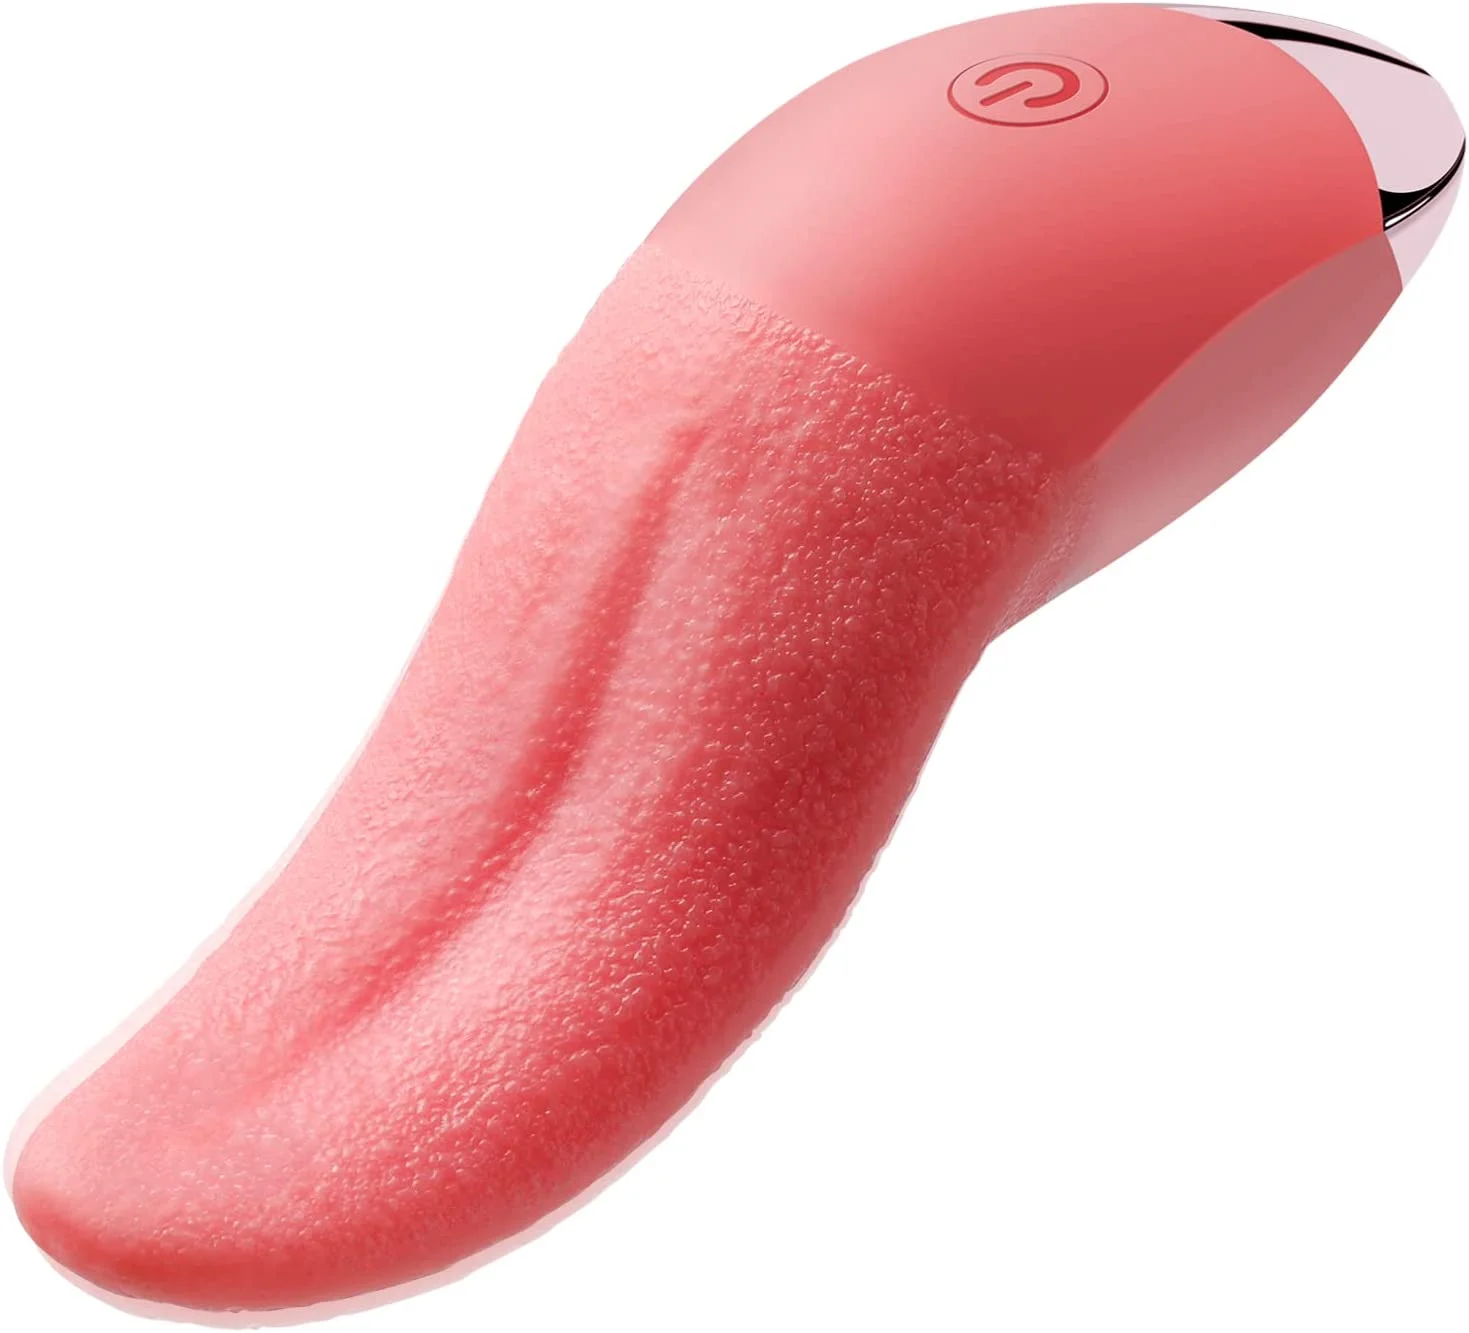 Clitoral Tongue Licking Vibrator Vaginal Nipples Clitoral Stimulator